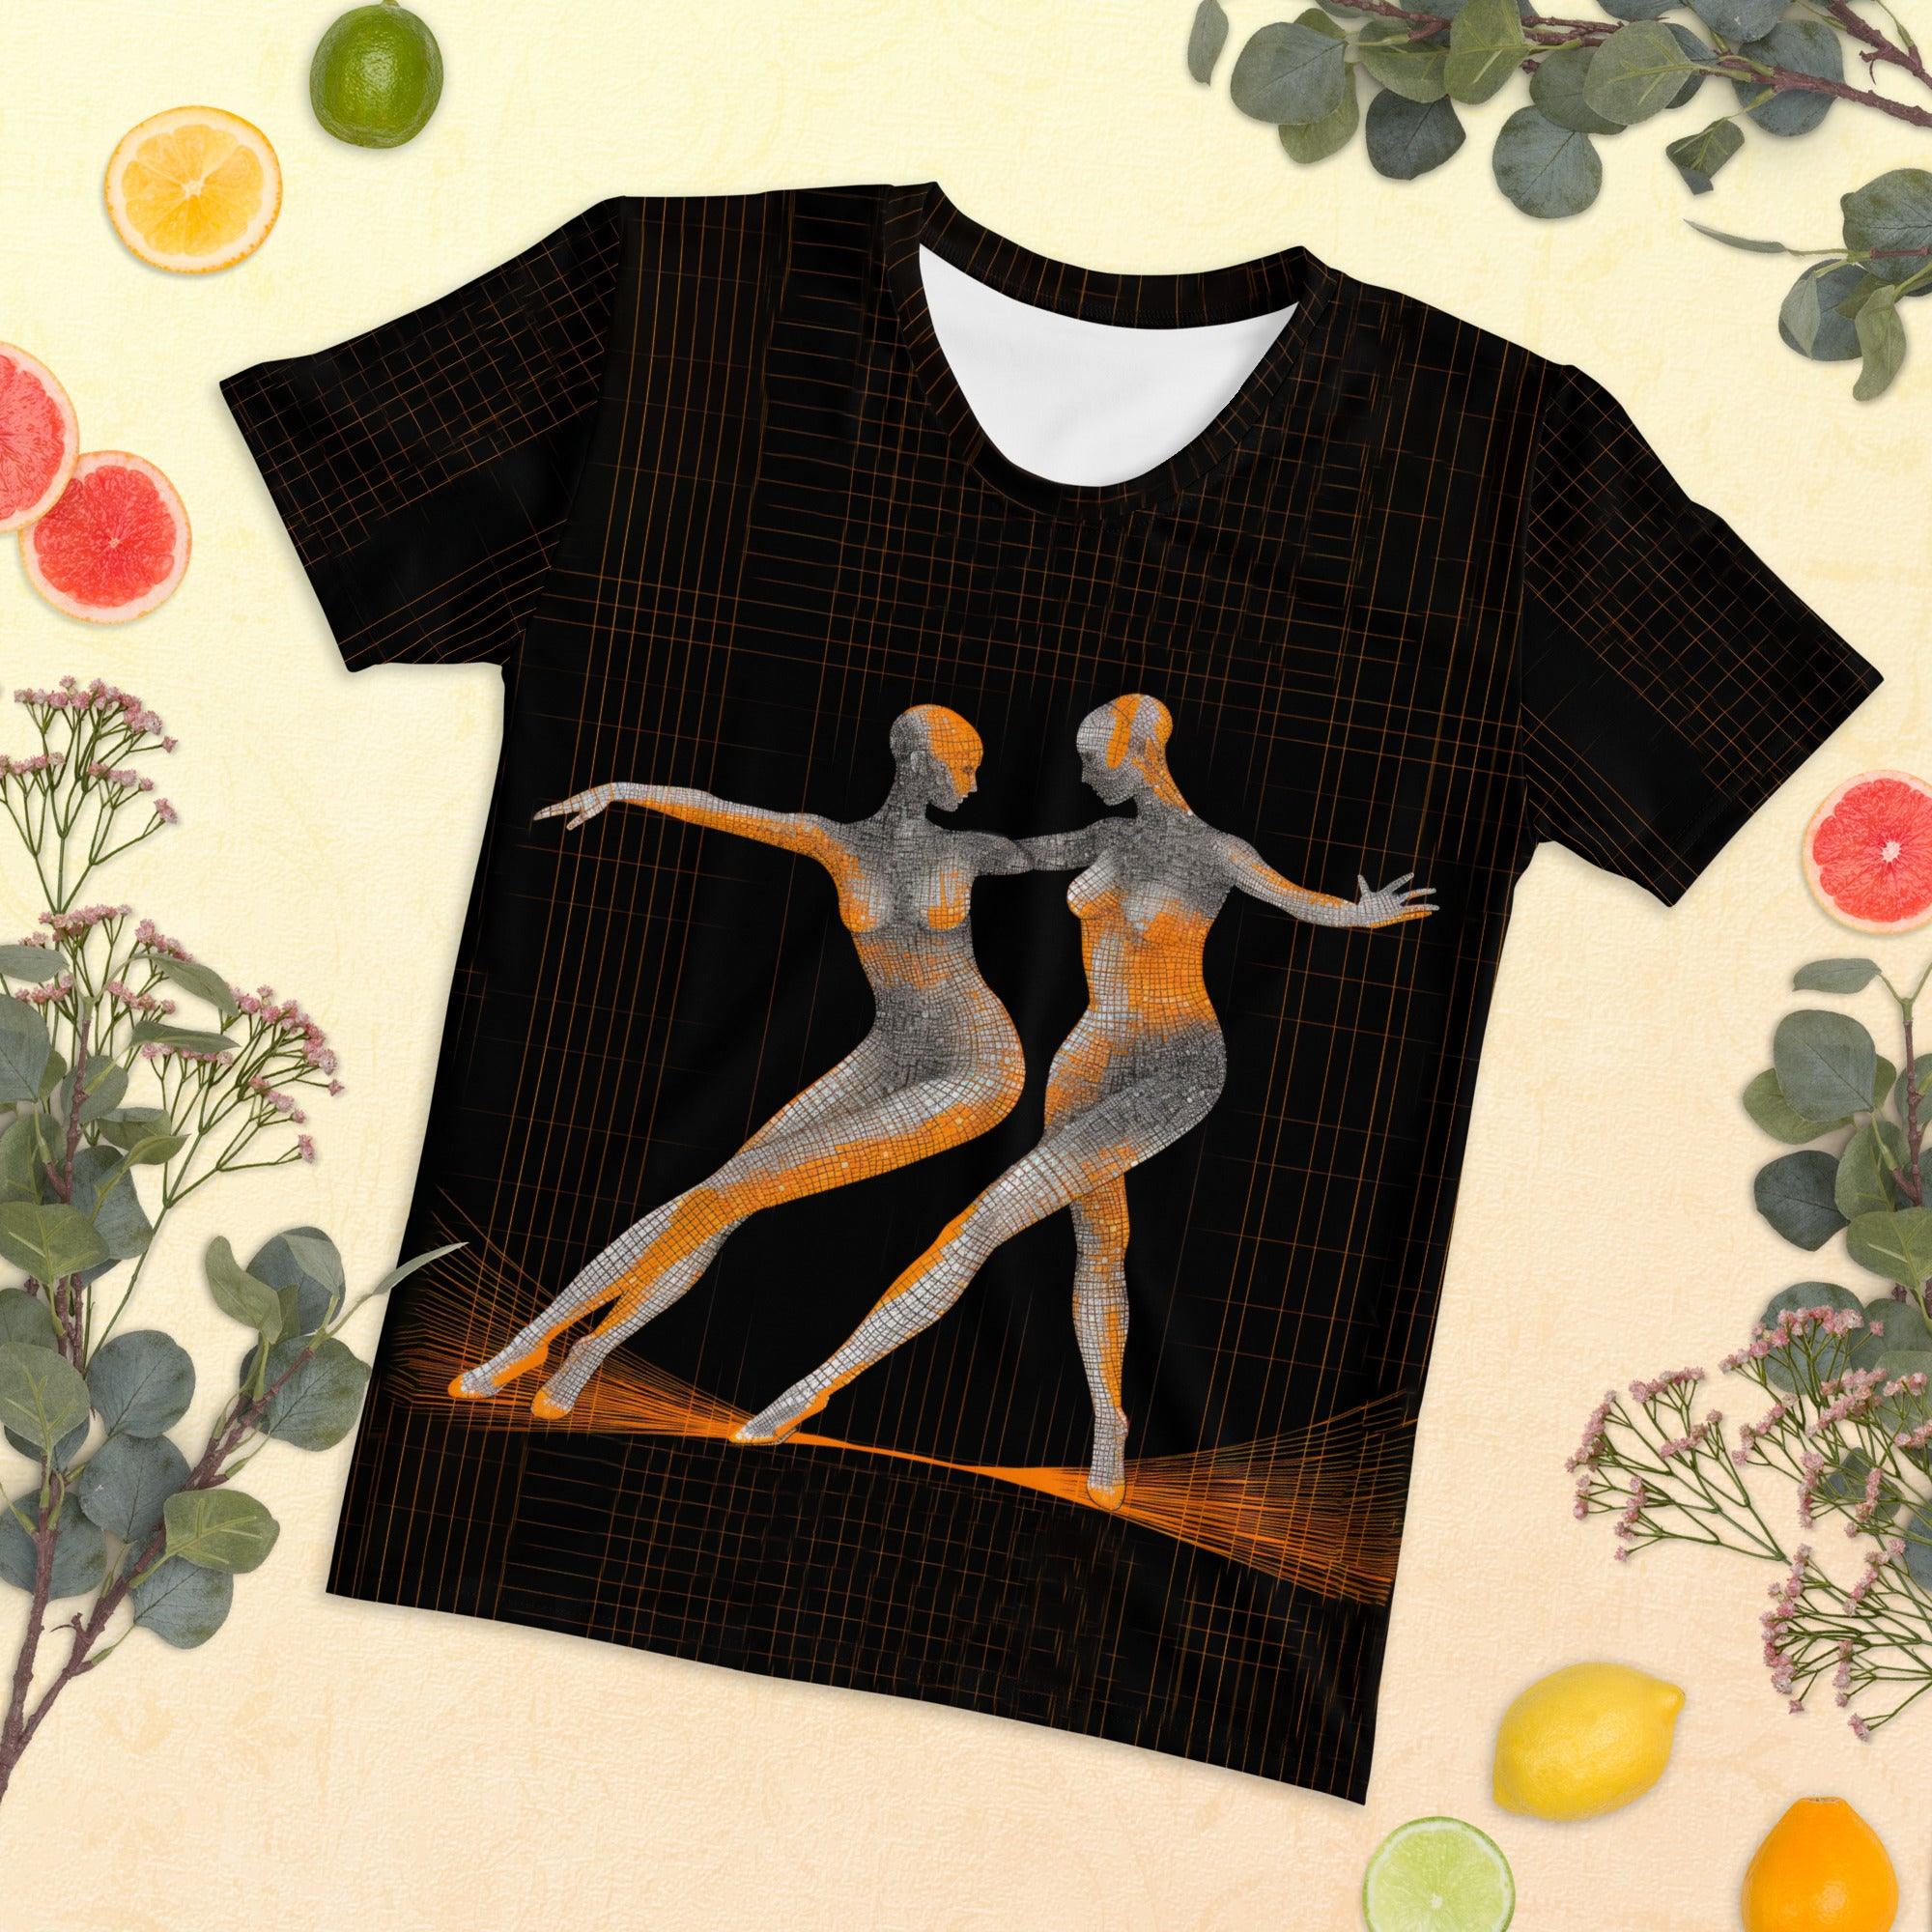 Dazzling Women's Dance Attire Women's T-shirt - Beyond T-shirts